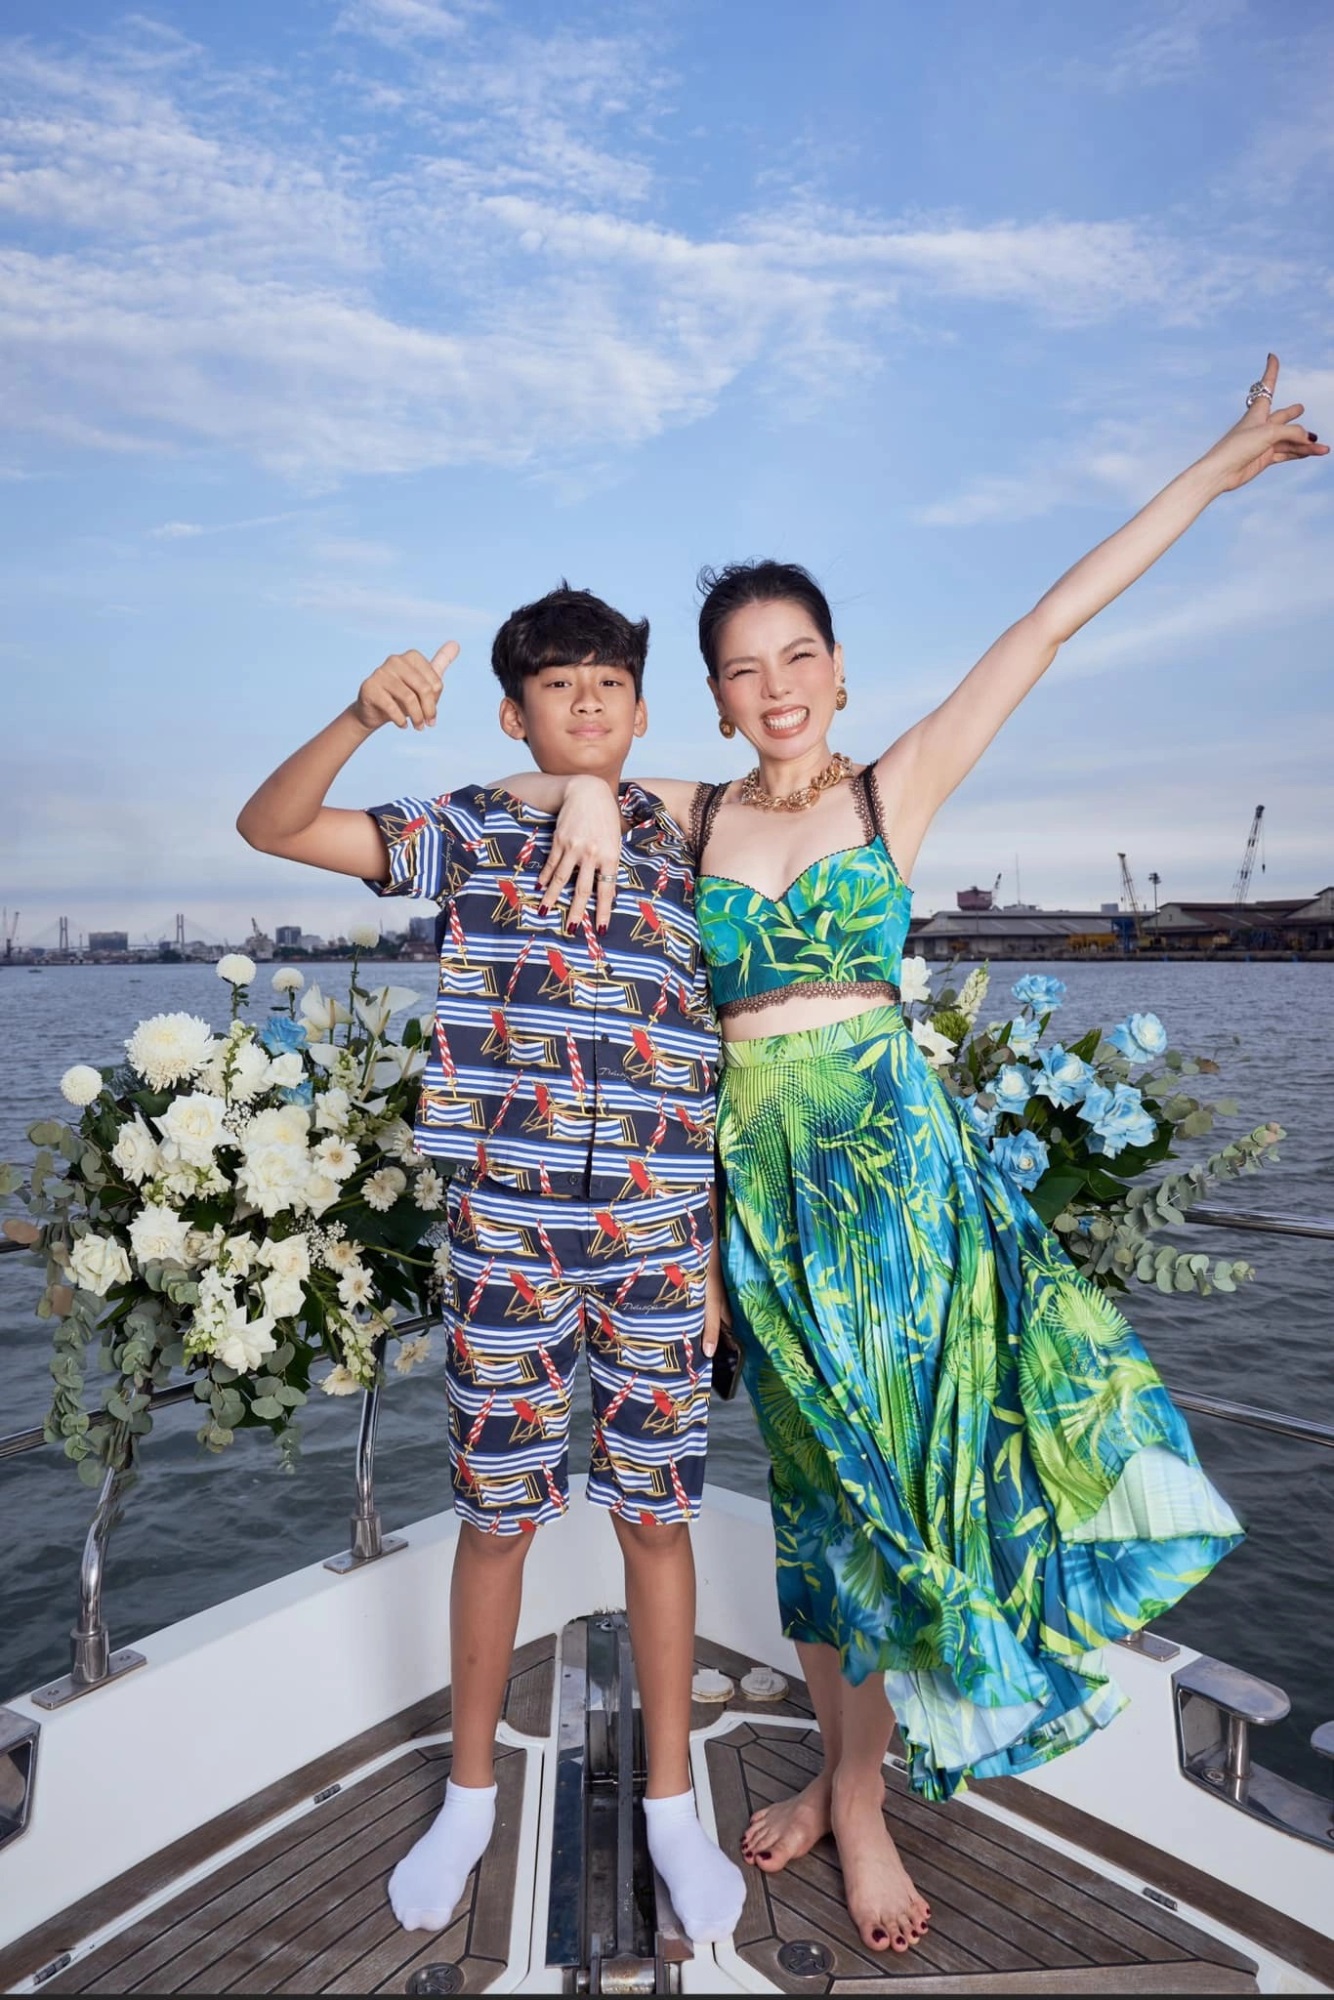 Đón tuổi mới trên du thuyền, Lệ Quyên tiết lộ một chuyện cho thấy mối quan hệ thân thiết của bạn trai Lâm Bảo Châu và con trai, khiến netizen ngưỡng mộ - Ảnh 2